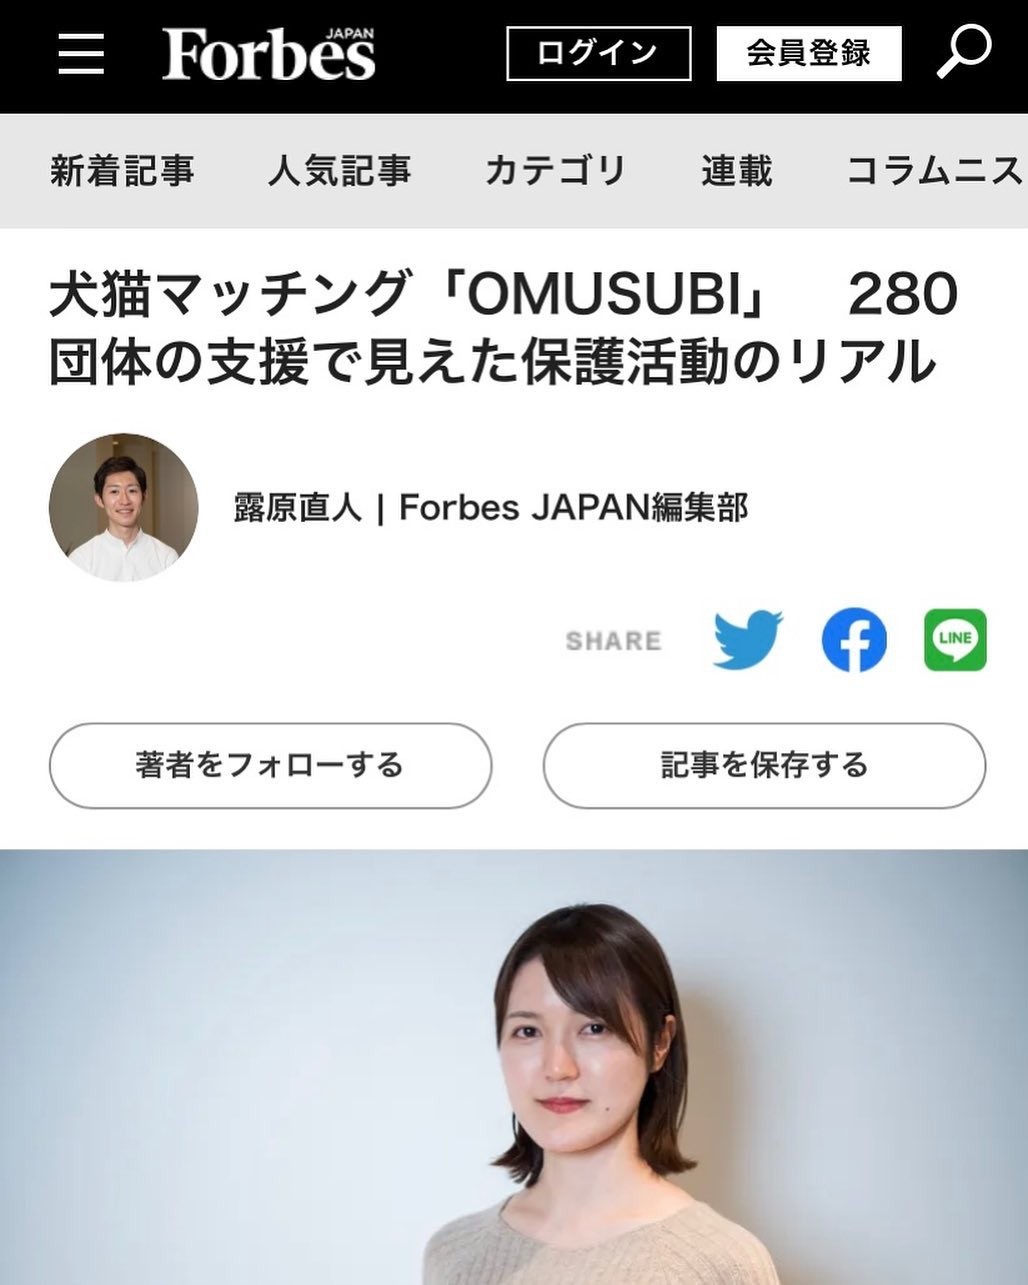 【メディア】Forbes Japan　『犬猫マッチング「OMUSUBI」280団体の支援で見えた保護活動のリアル 』内で一部取材いただきました